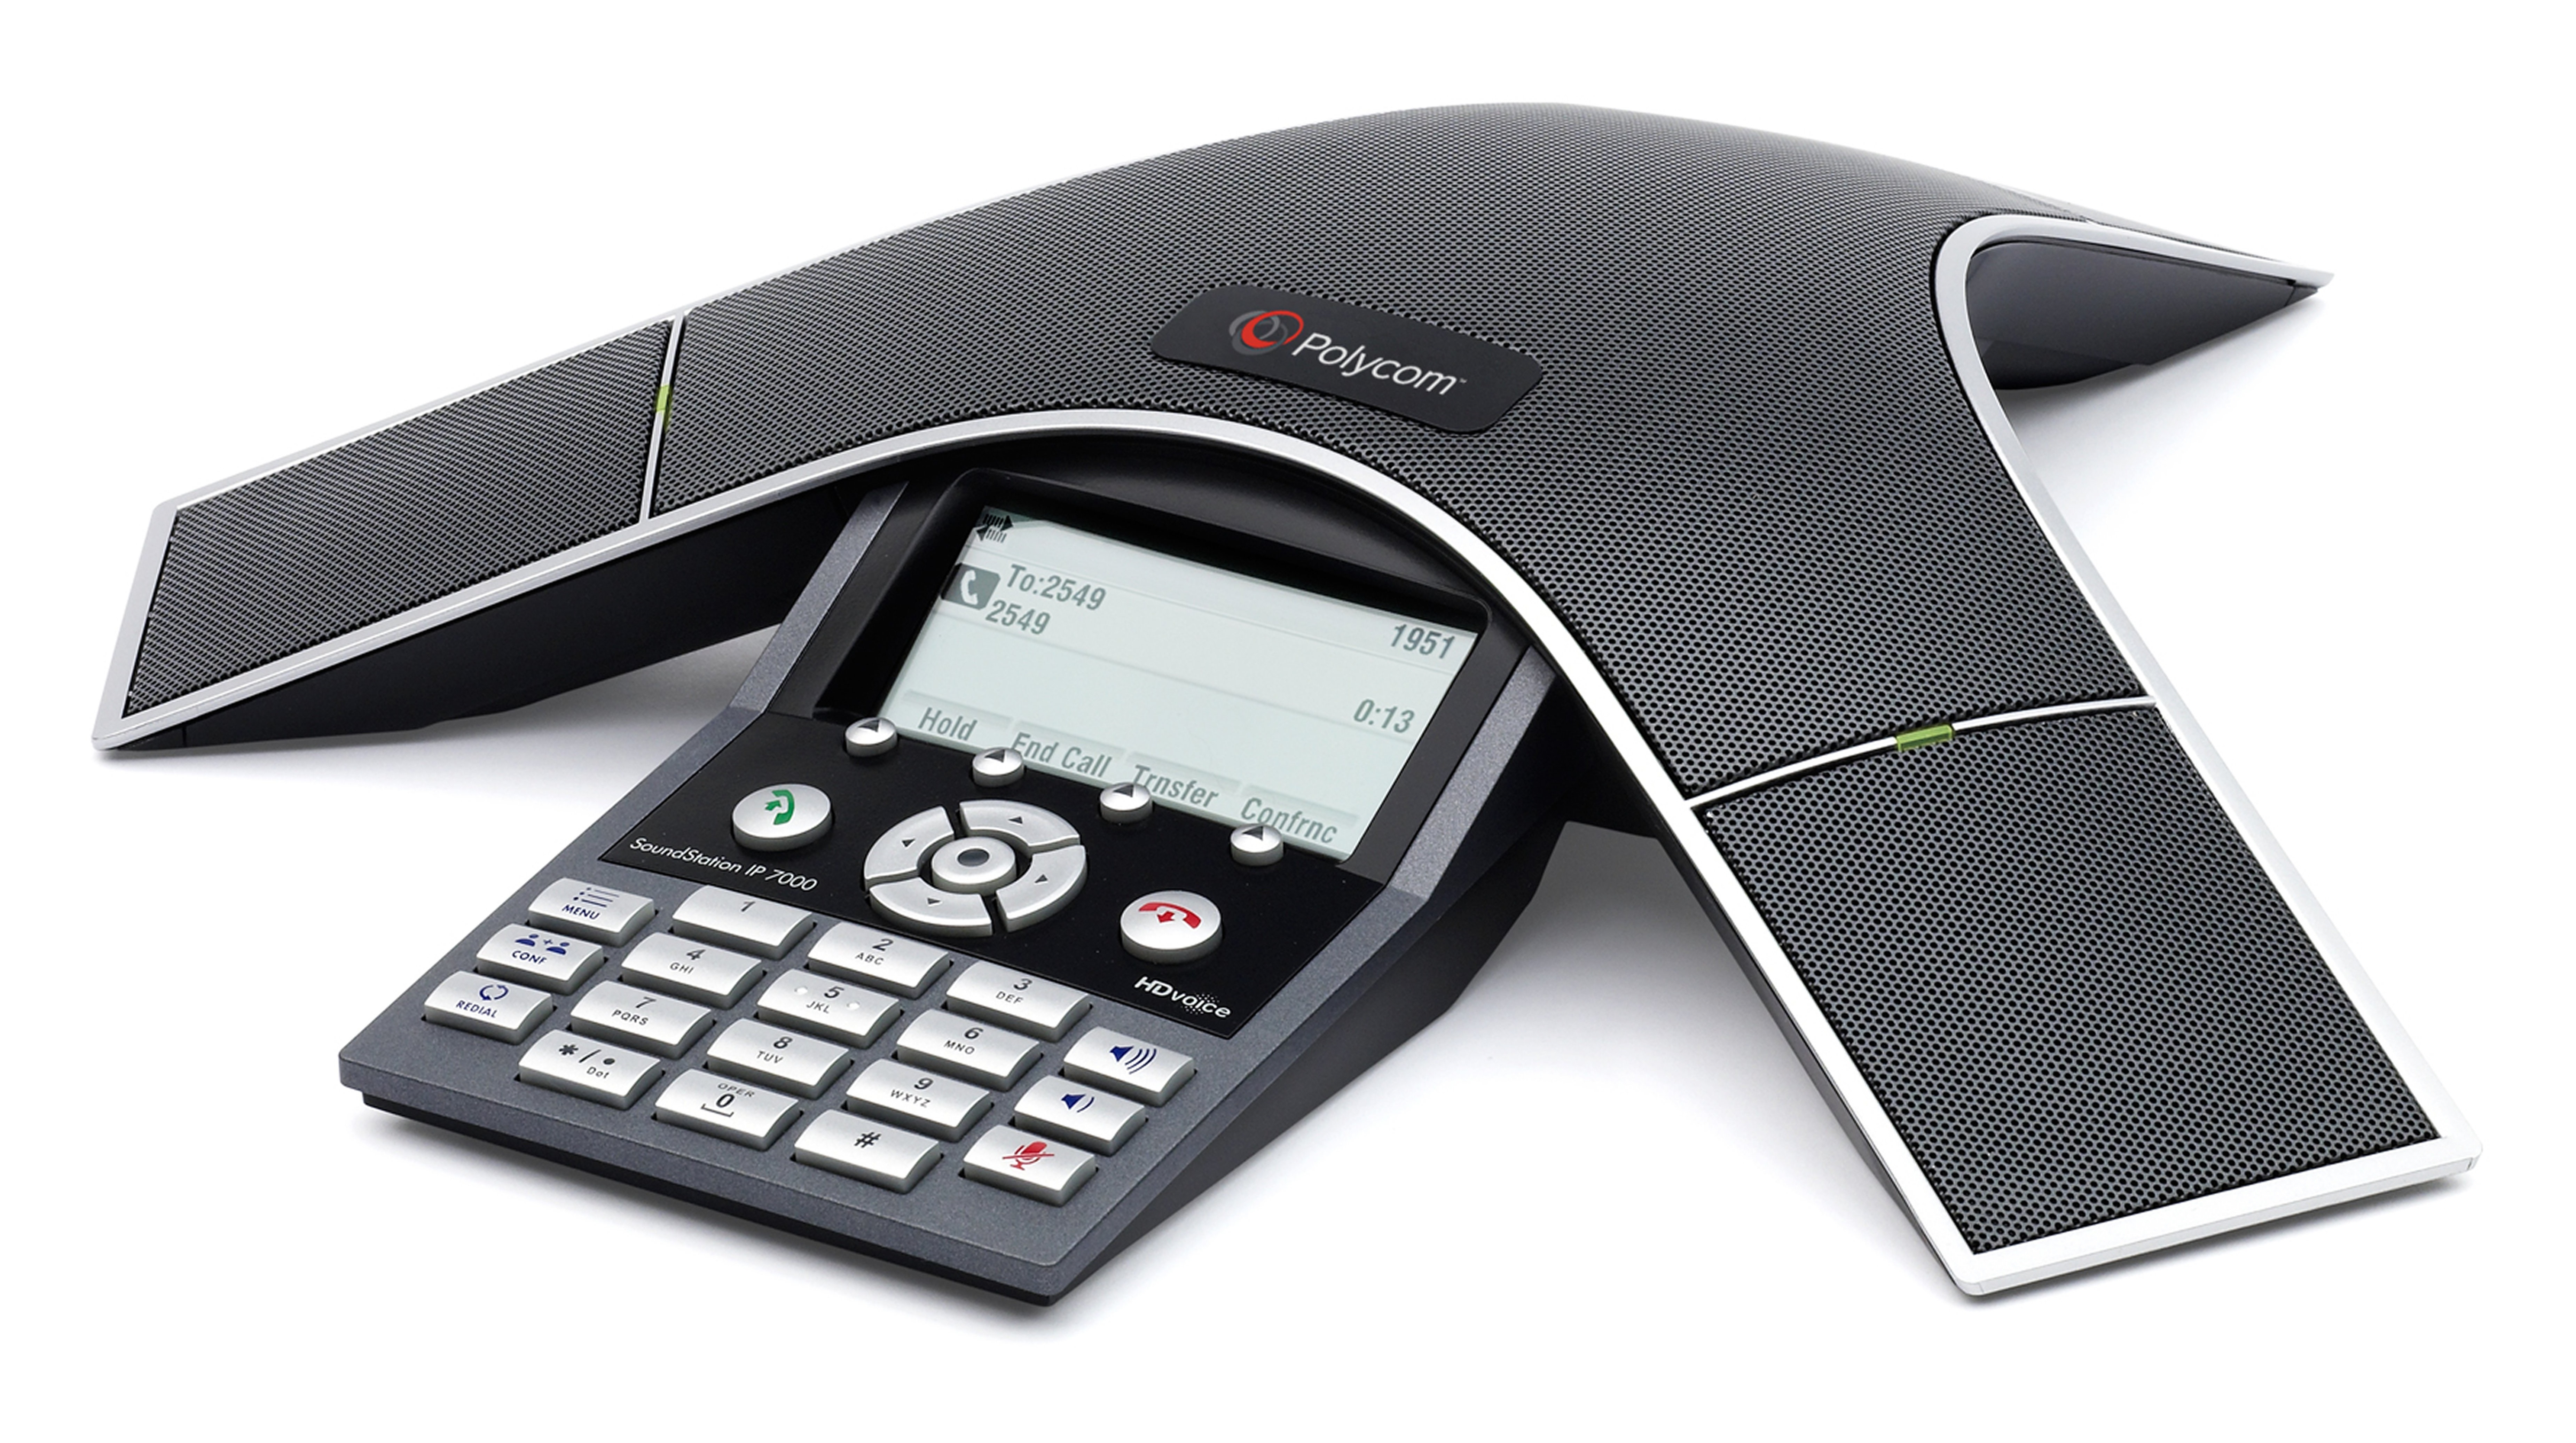 Poly SoundStation IP 7000 - VoIP-Konferenztelefon